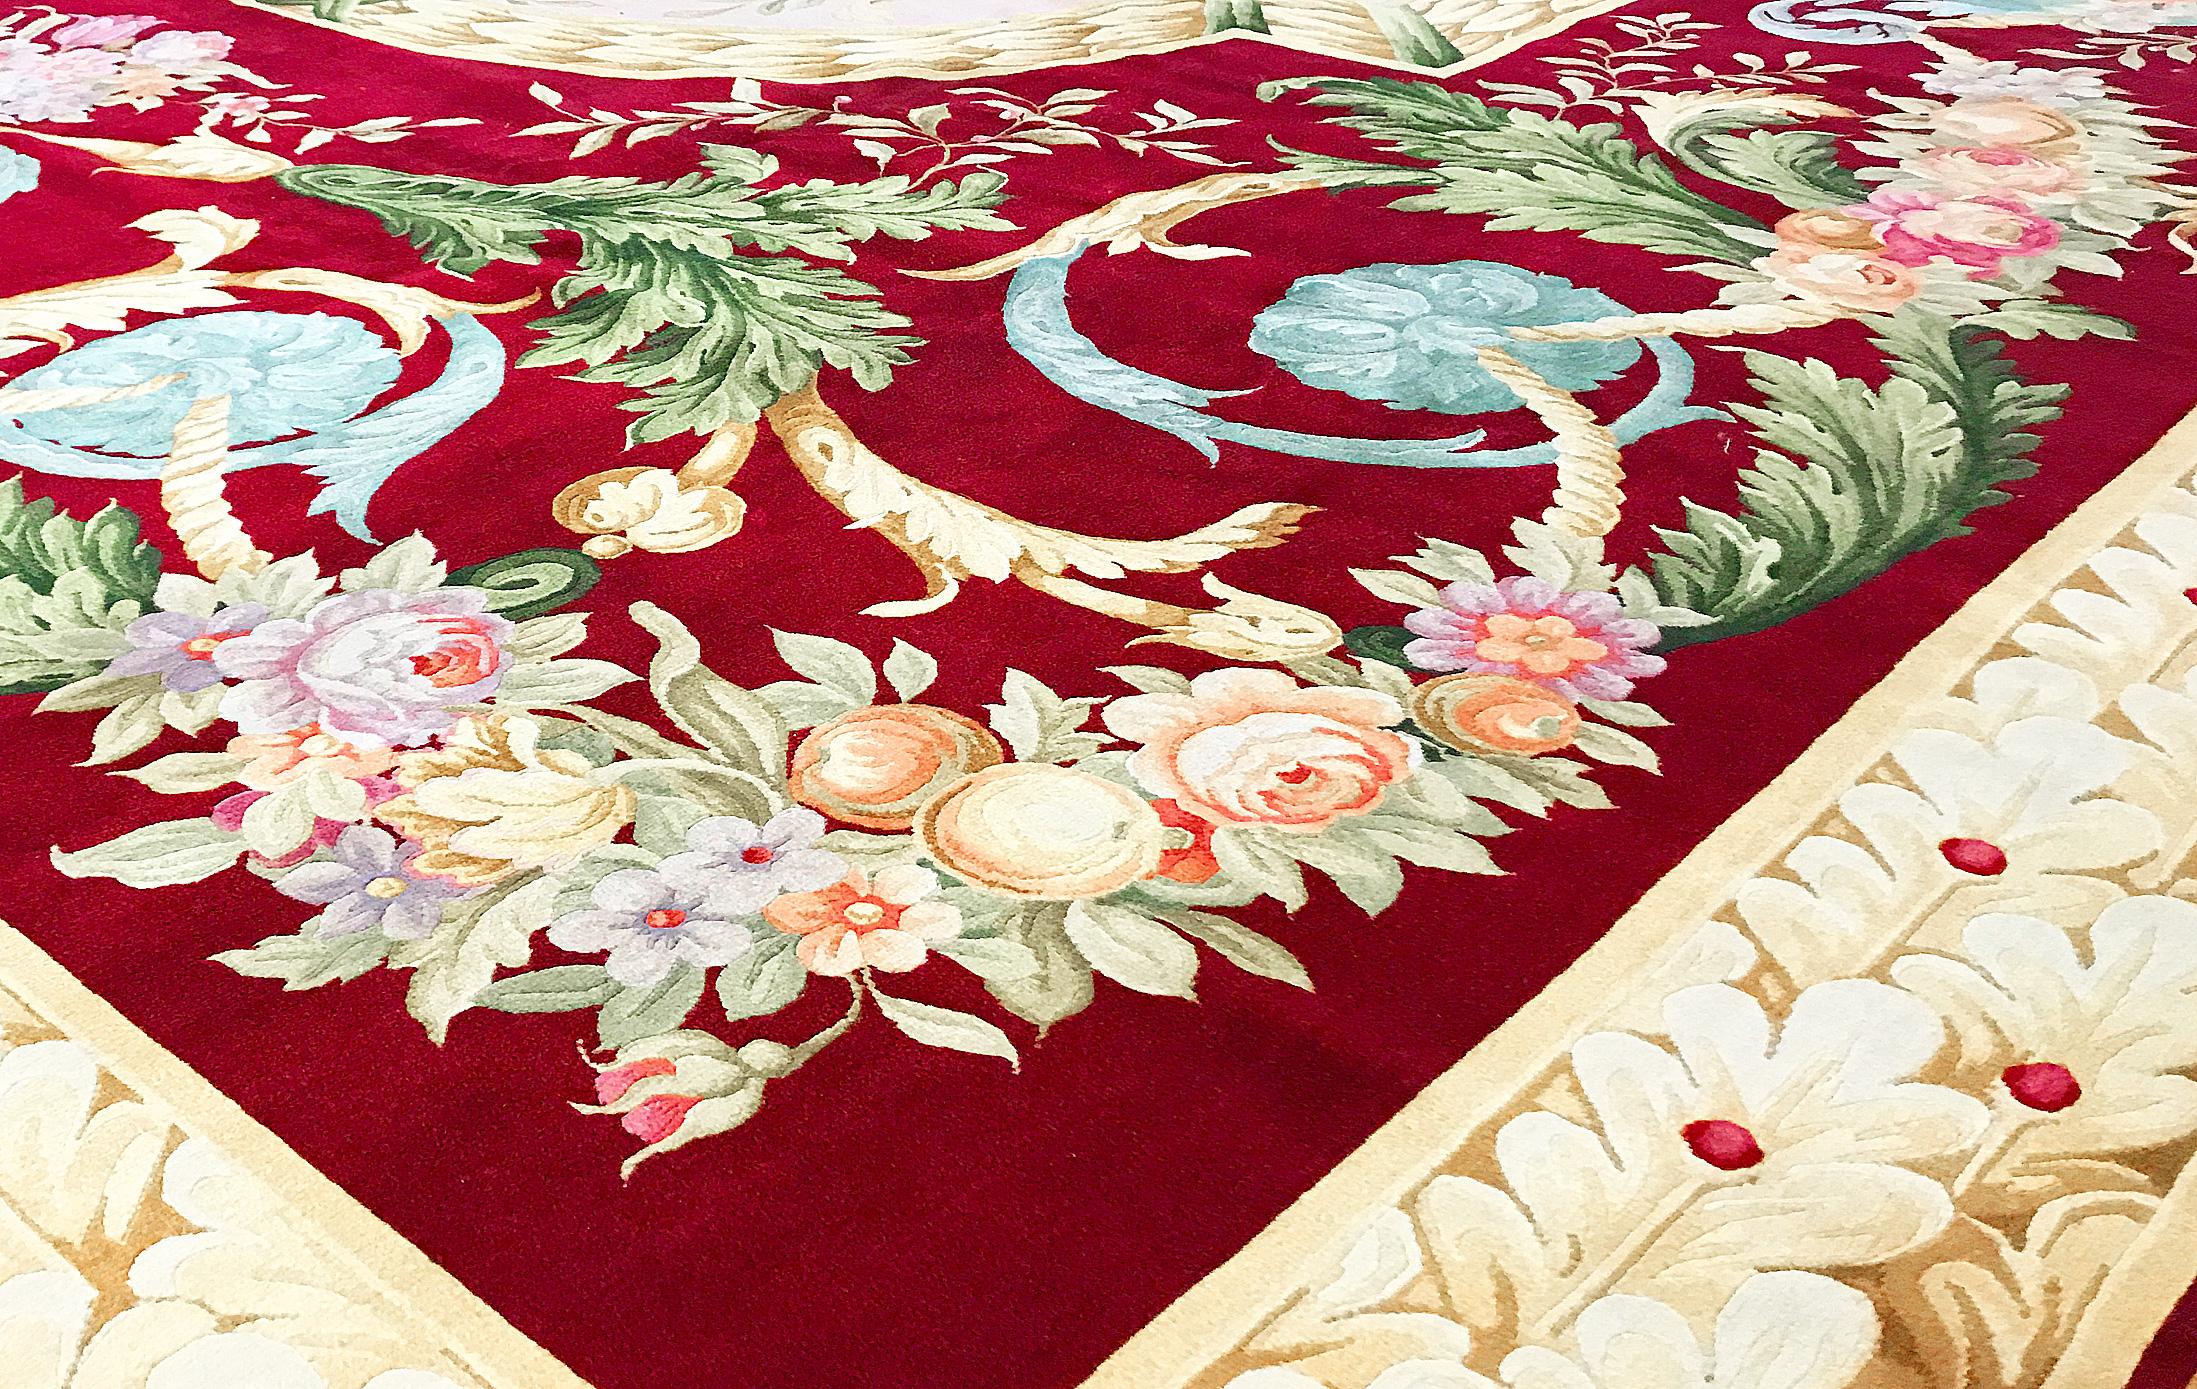 Recréation d'un modèle français classique en utilisant les meilleurs matériaux et des tisserands qualifiés. Ce tapis en peluche épaisse est tissé à la main en Chine et donne l'impression d'être le meilleur du style et de la qualité européens. Les